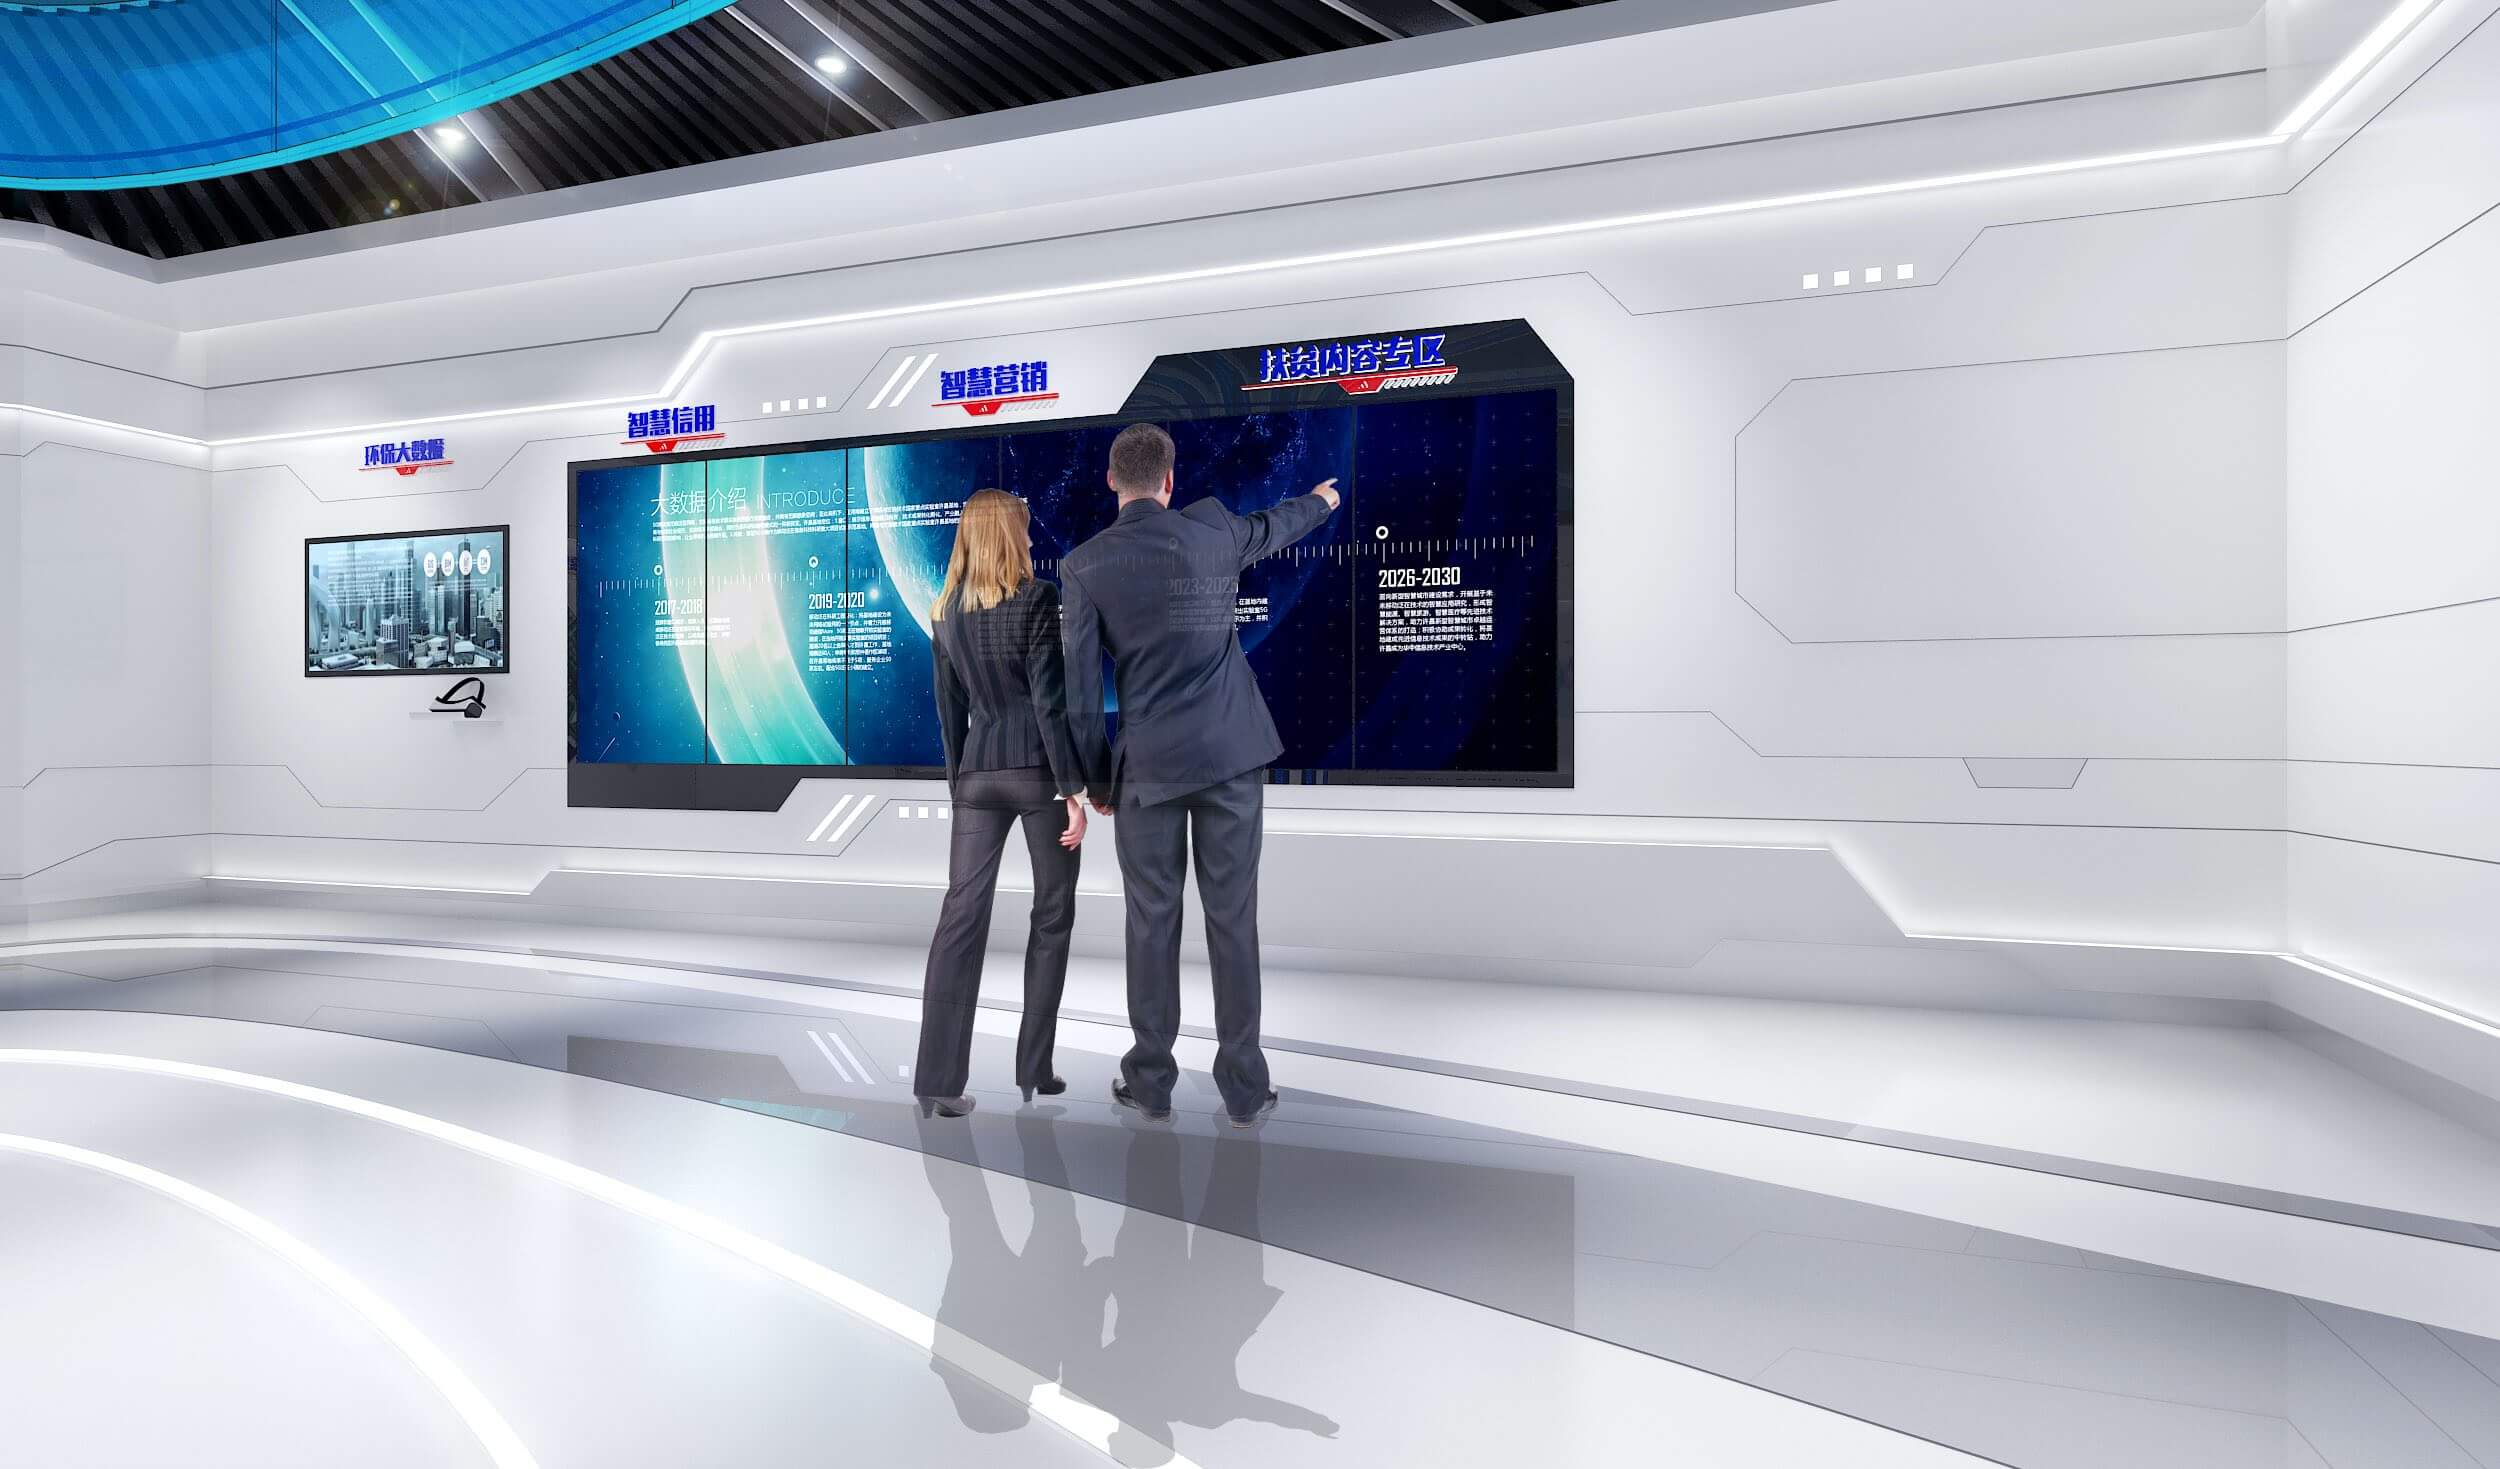 图片展示两人在高科技控制室内，站在大型屏幕前讨论数据和信息，环境现代化，充满未来感。